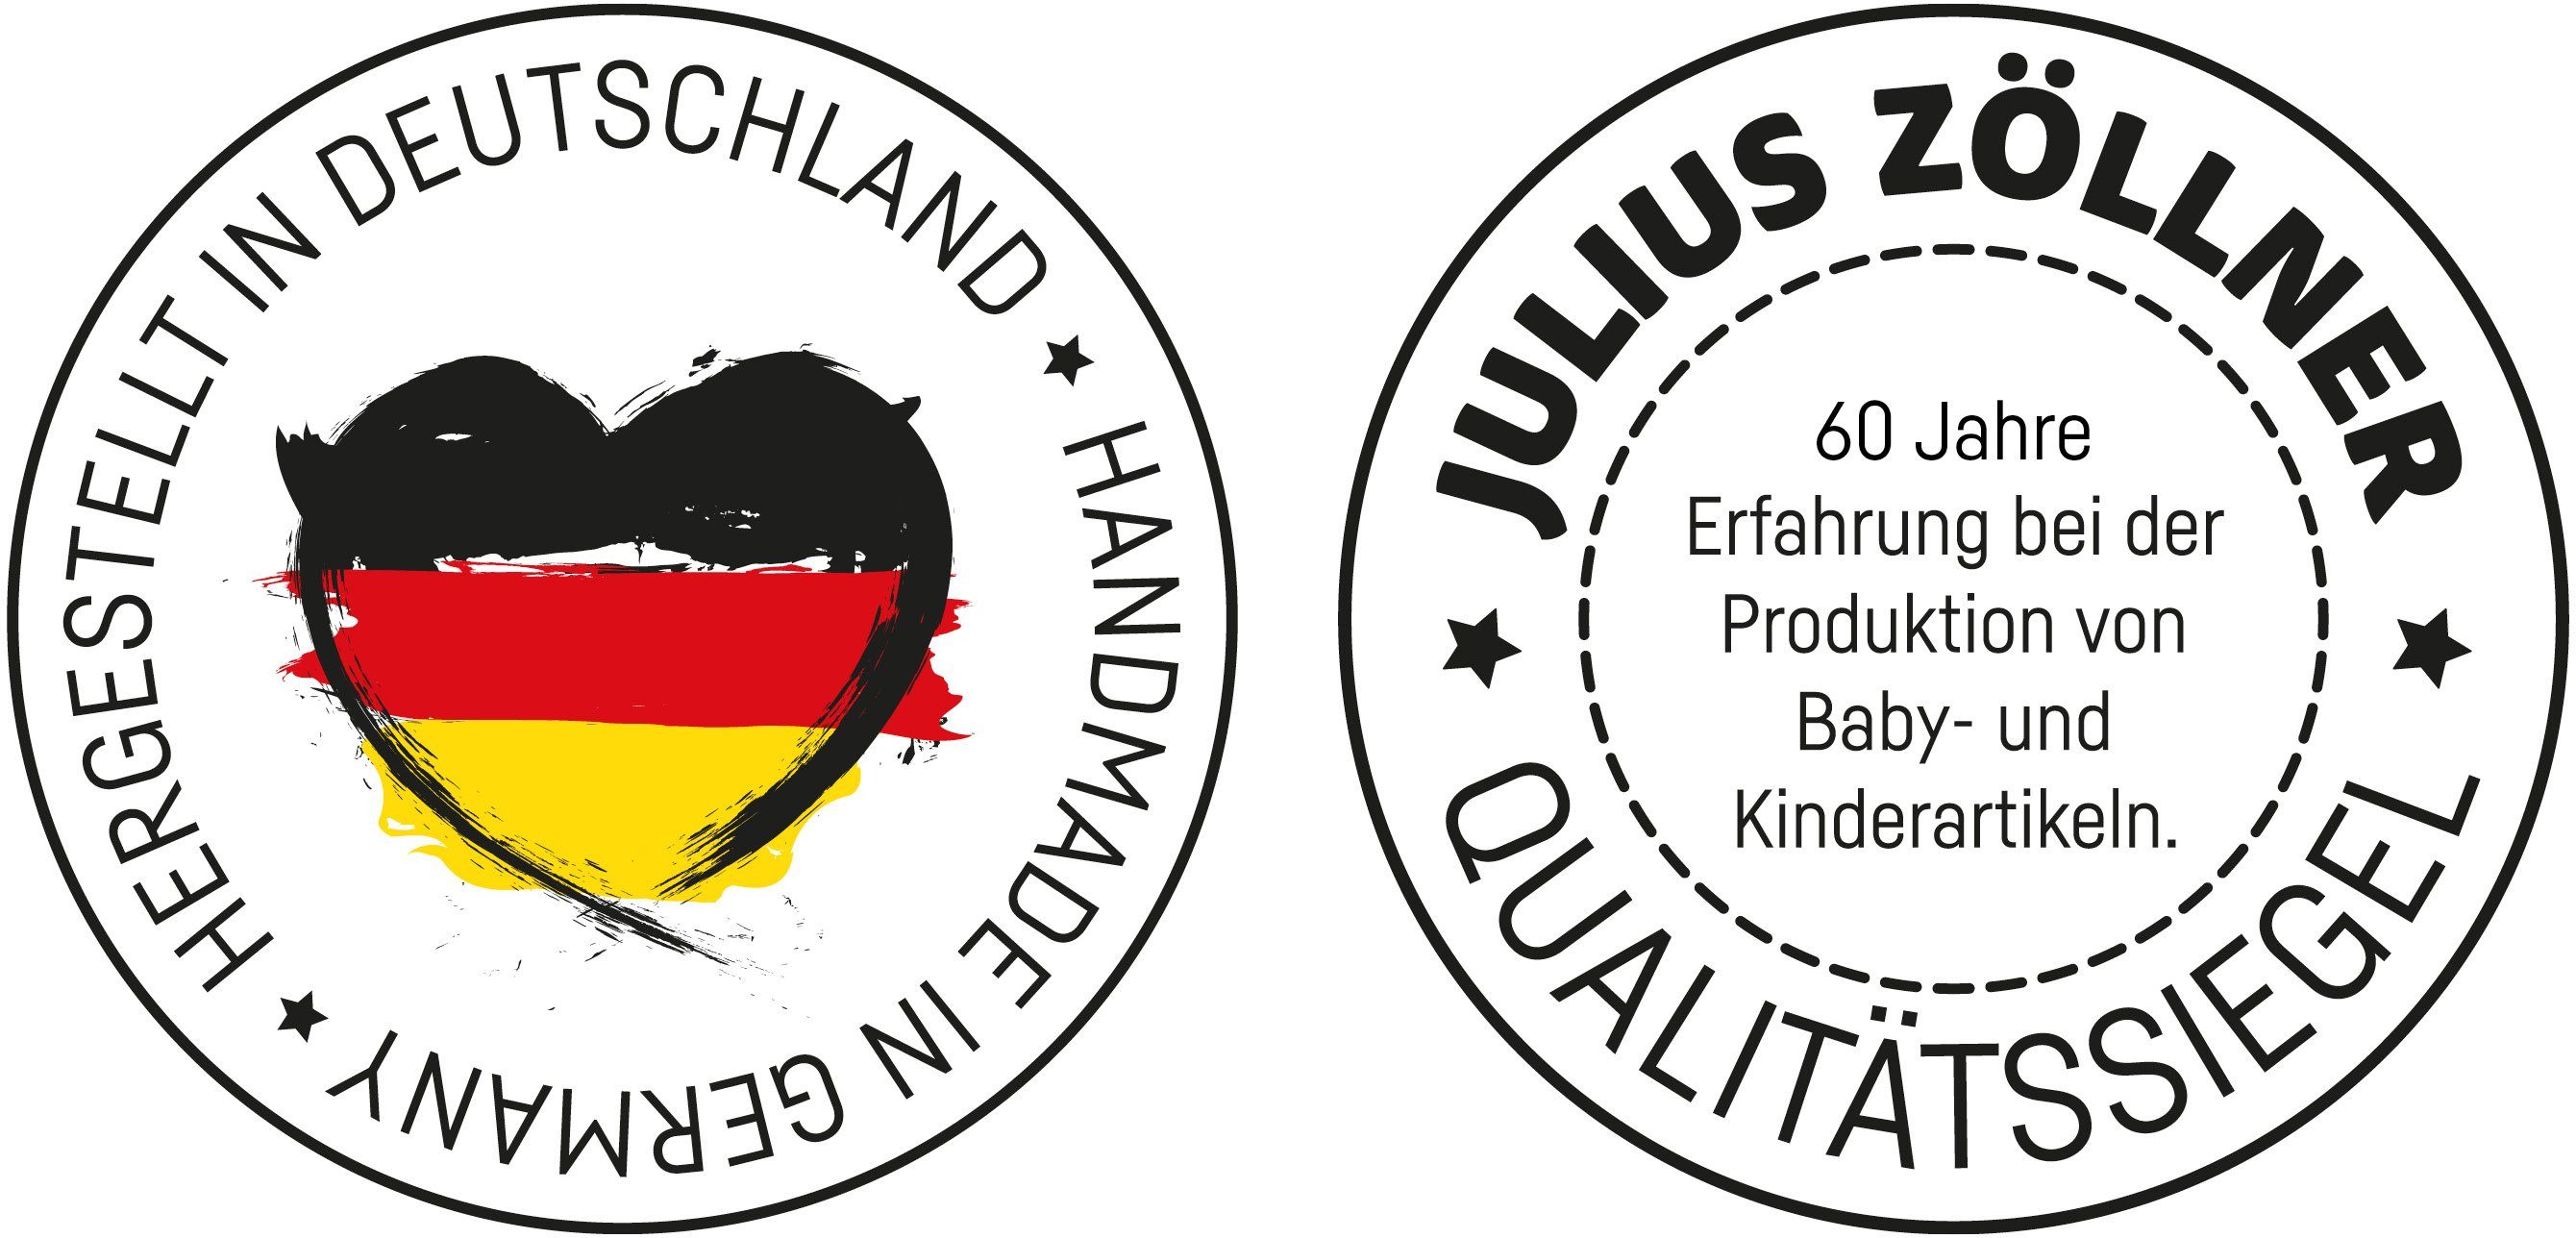 Julius 2-Keil, Wickelauflage Rosalie, Made in Germany Zöllner